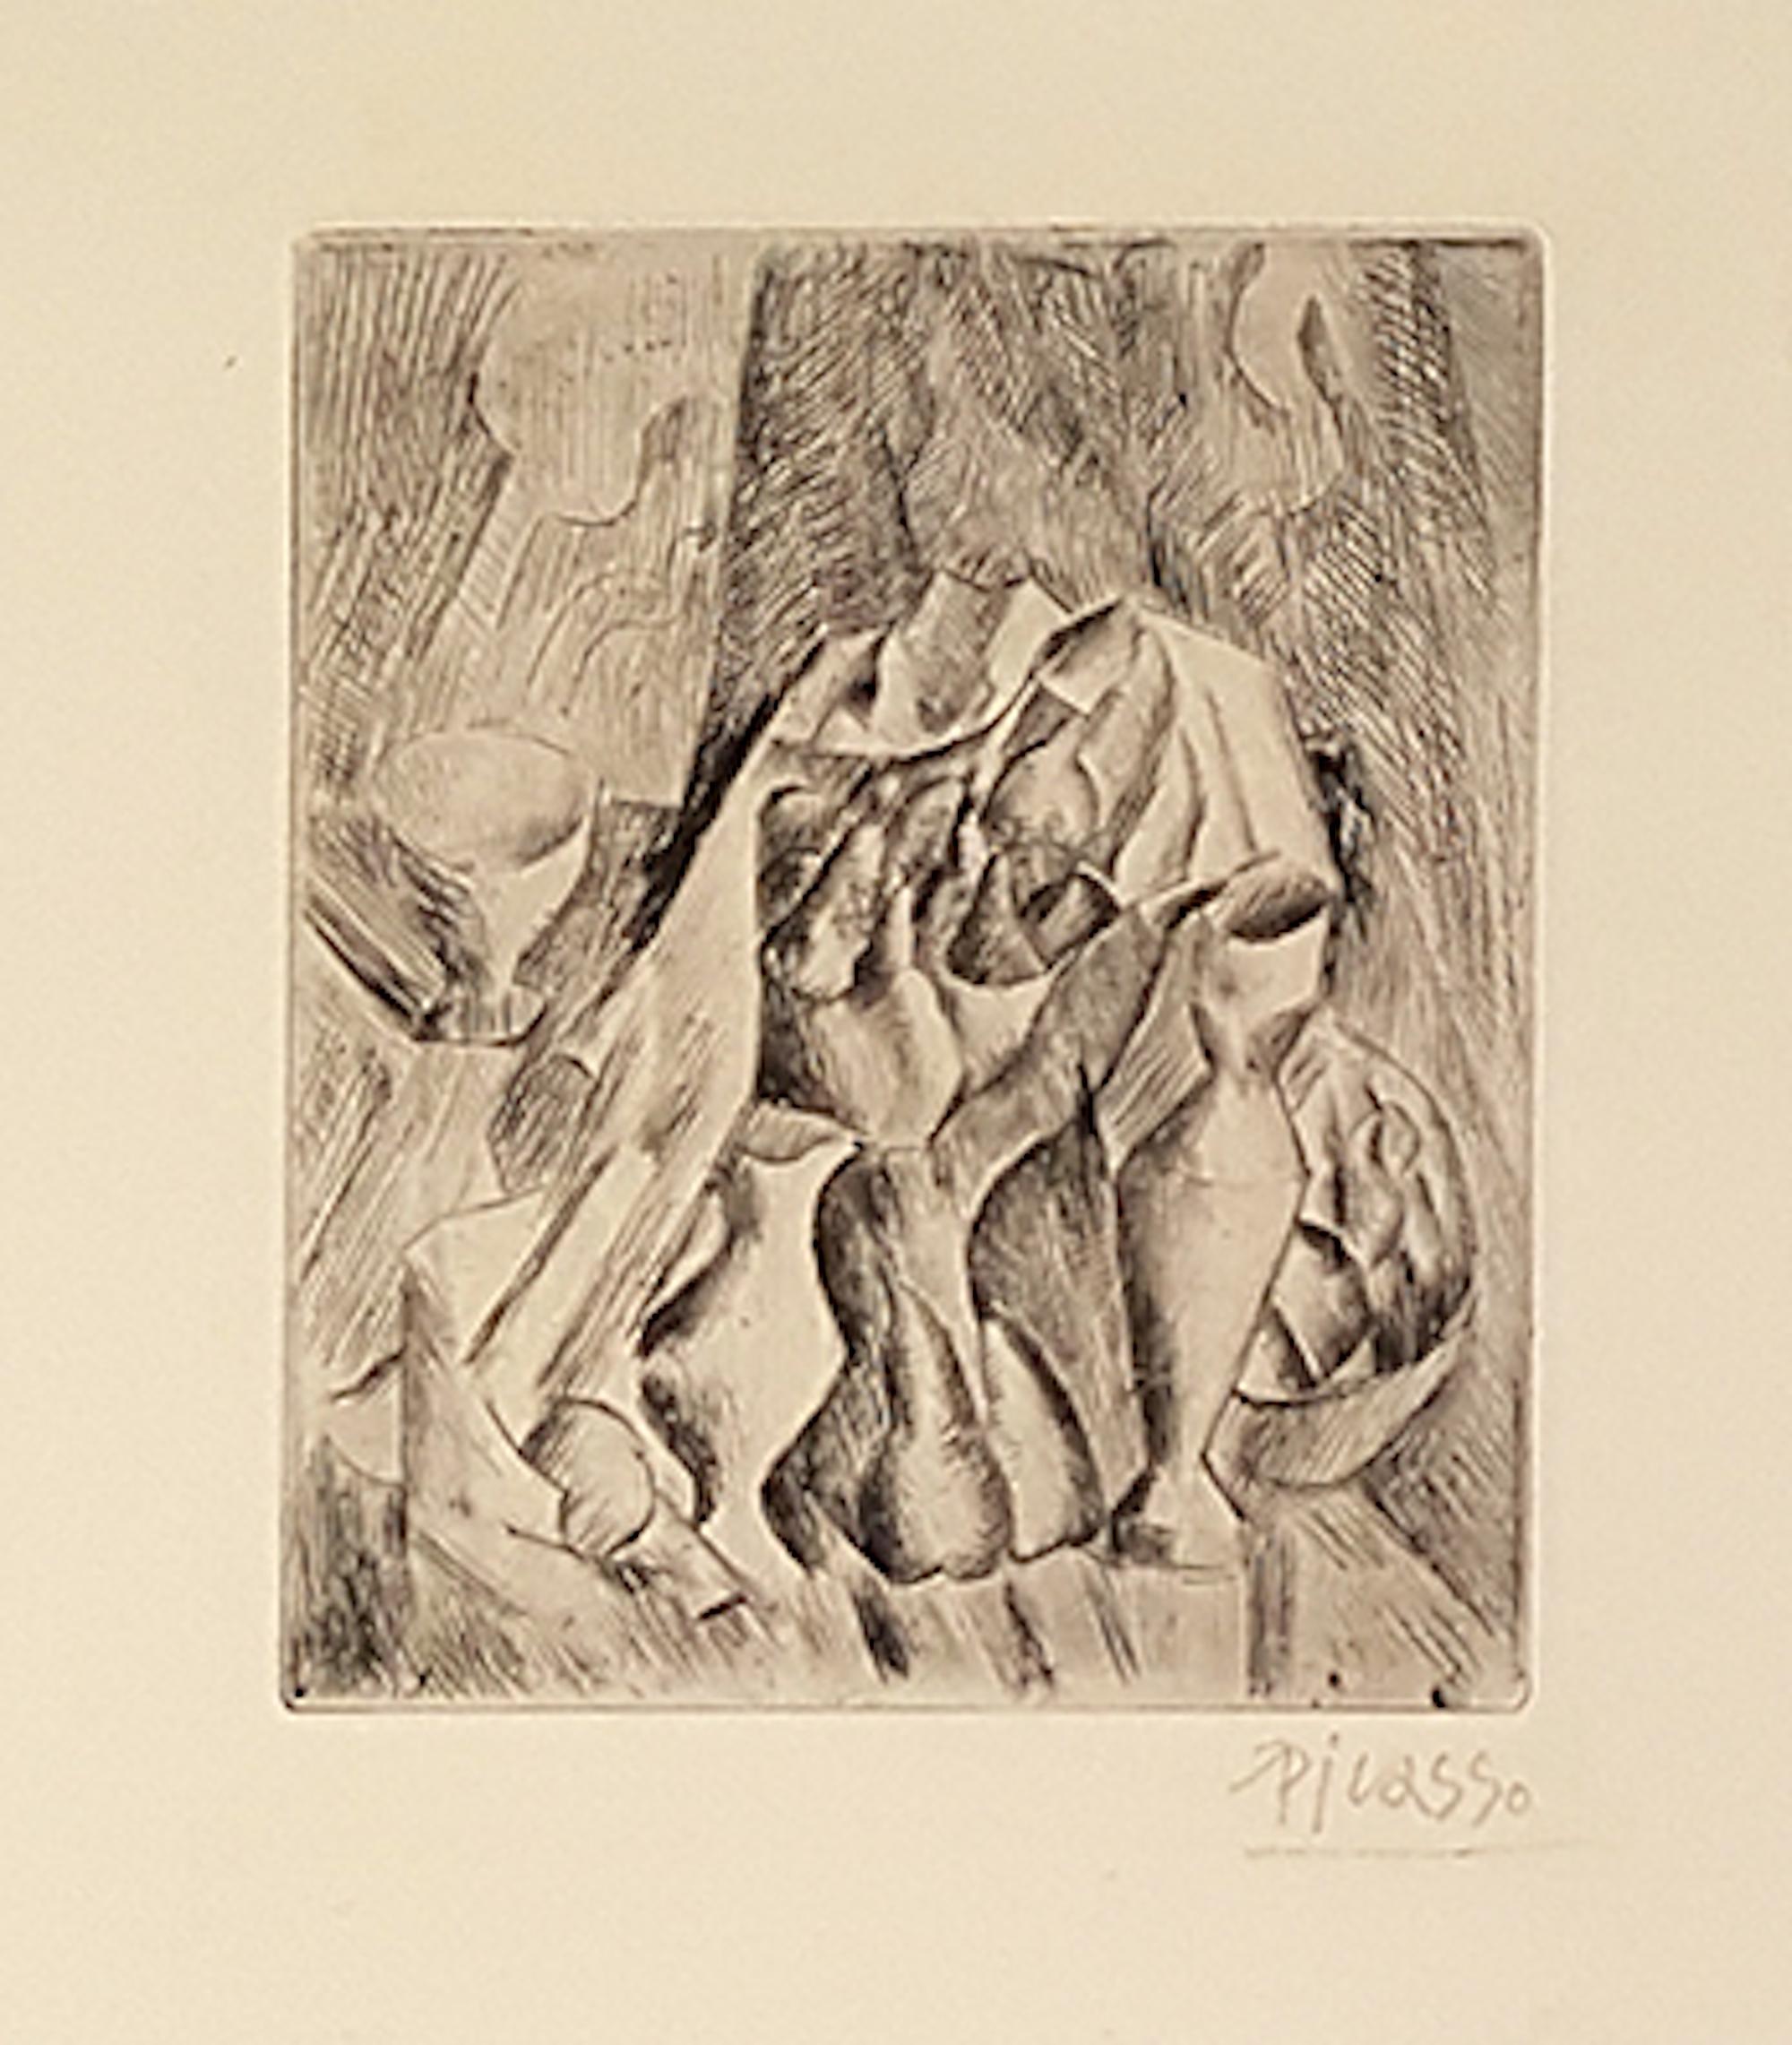 Nature Morte, Compotier ist eine seltene schwarz-weiße Kaltnadelradierung auf elfenbeinfarbenem Büttenpapier, die Pablo Picasso 1909 schuf. Auflage: 100 Stück.

Handsigniert mit Bleistift am unteren rechten Rand.

Ein frühes grafisches Werk

In